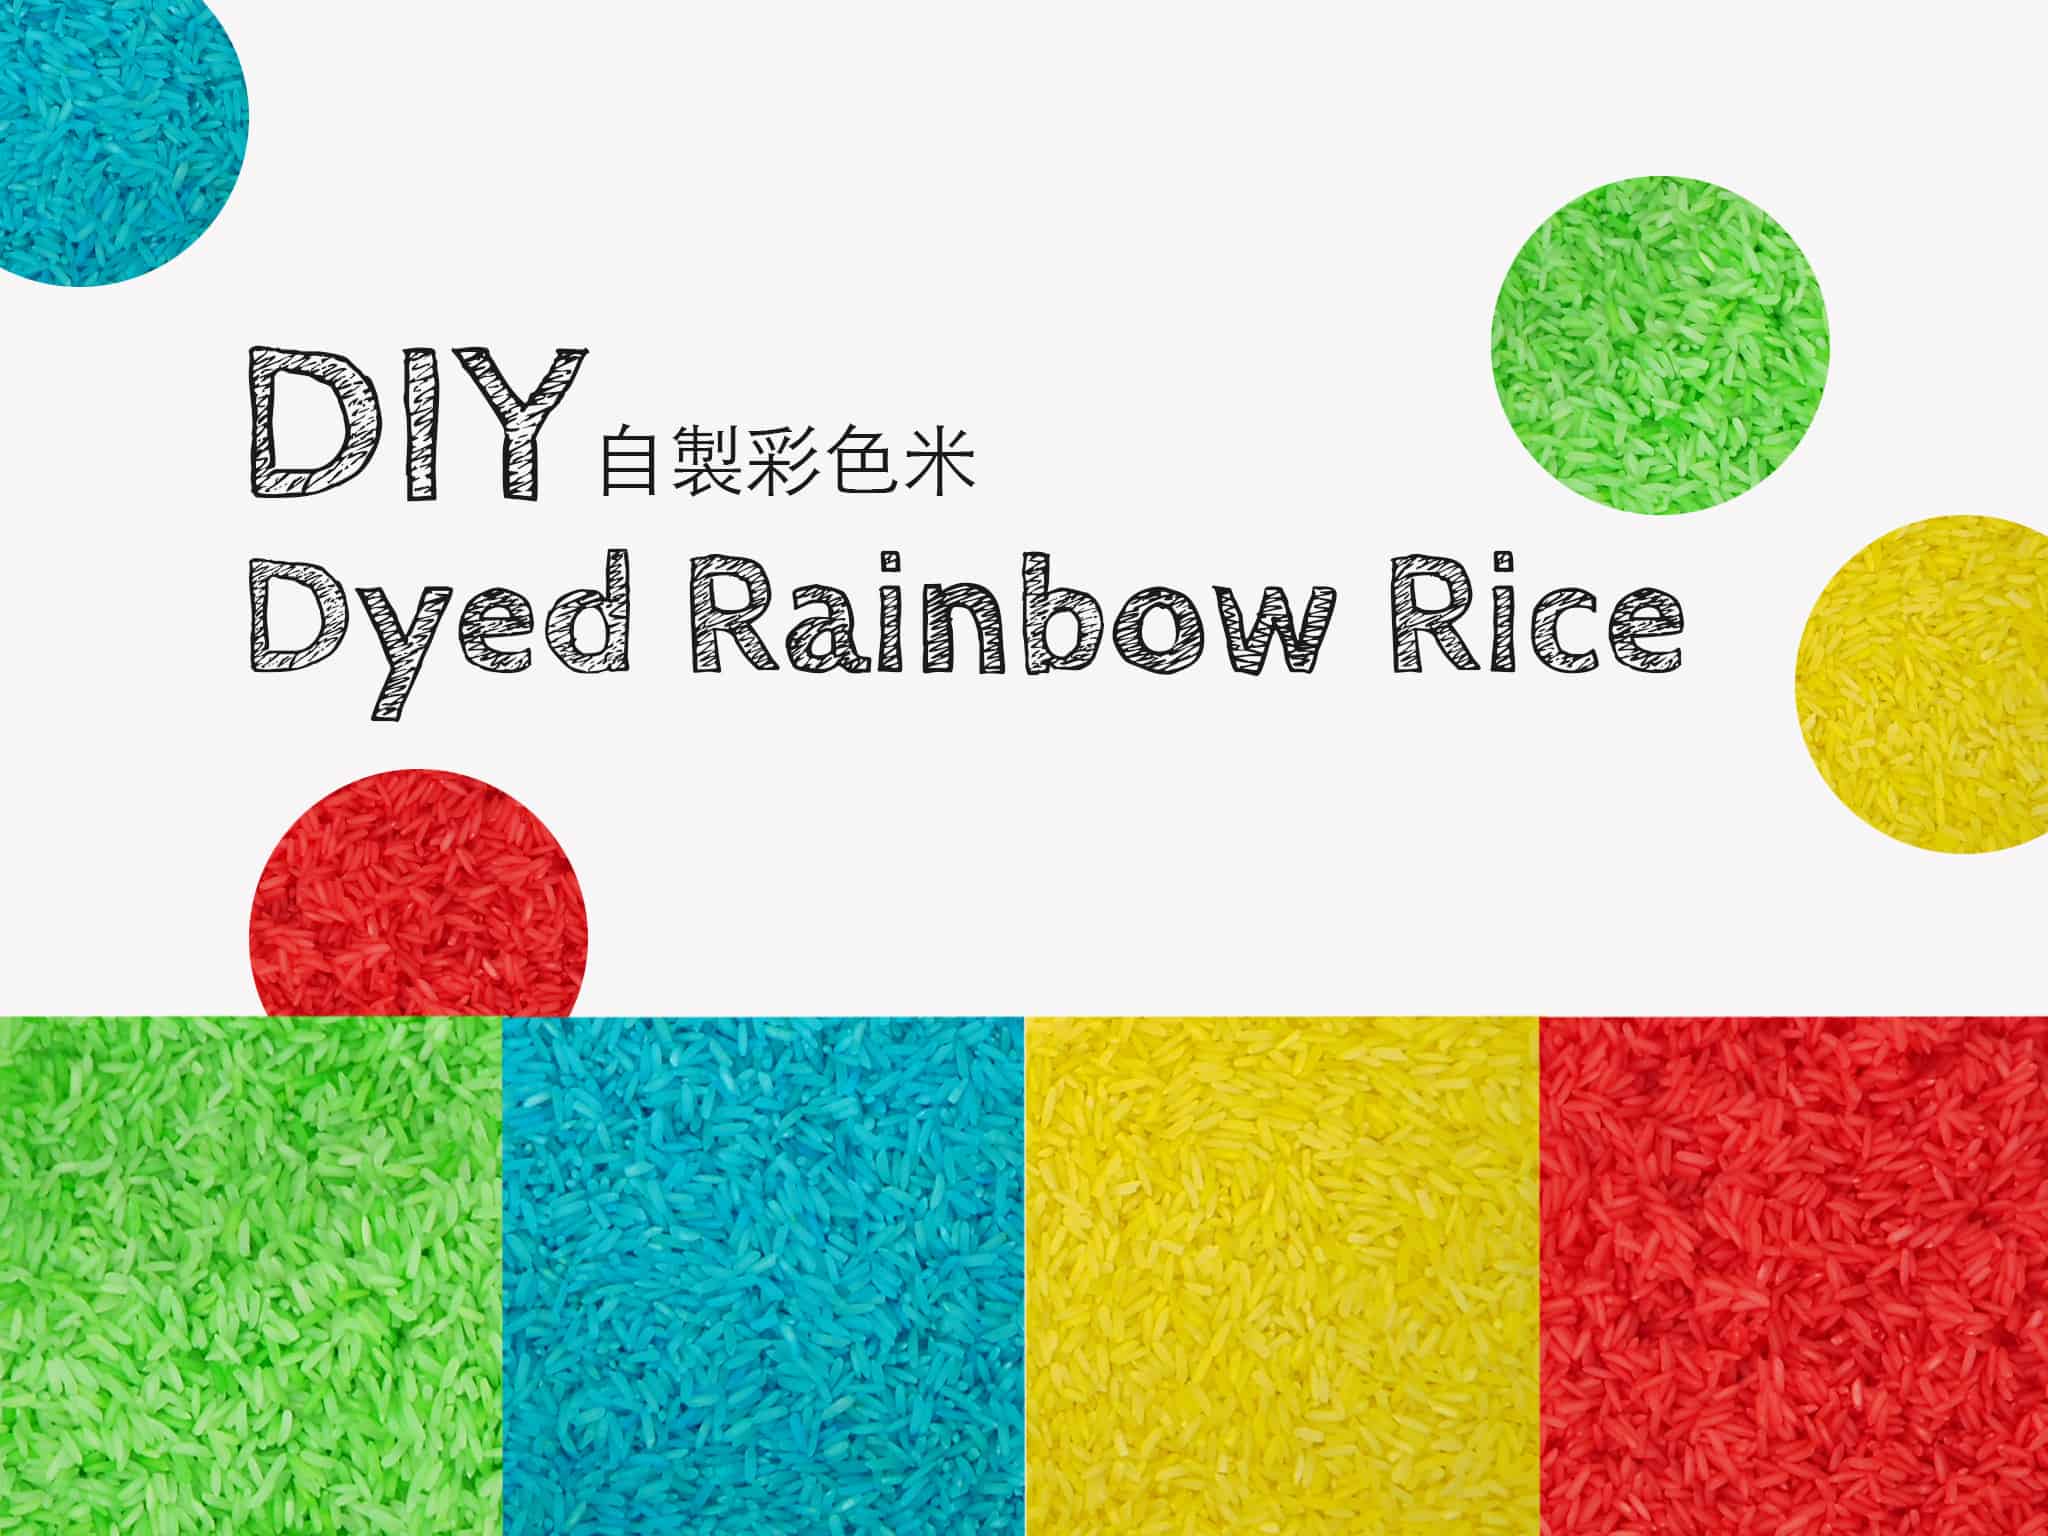 輕鬆 染出彩色米 How to Dye Colorful Rice